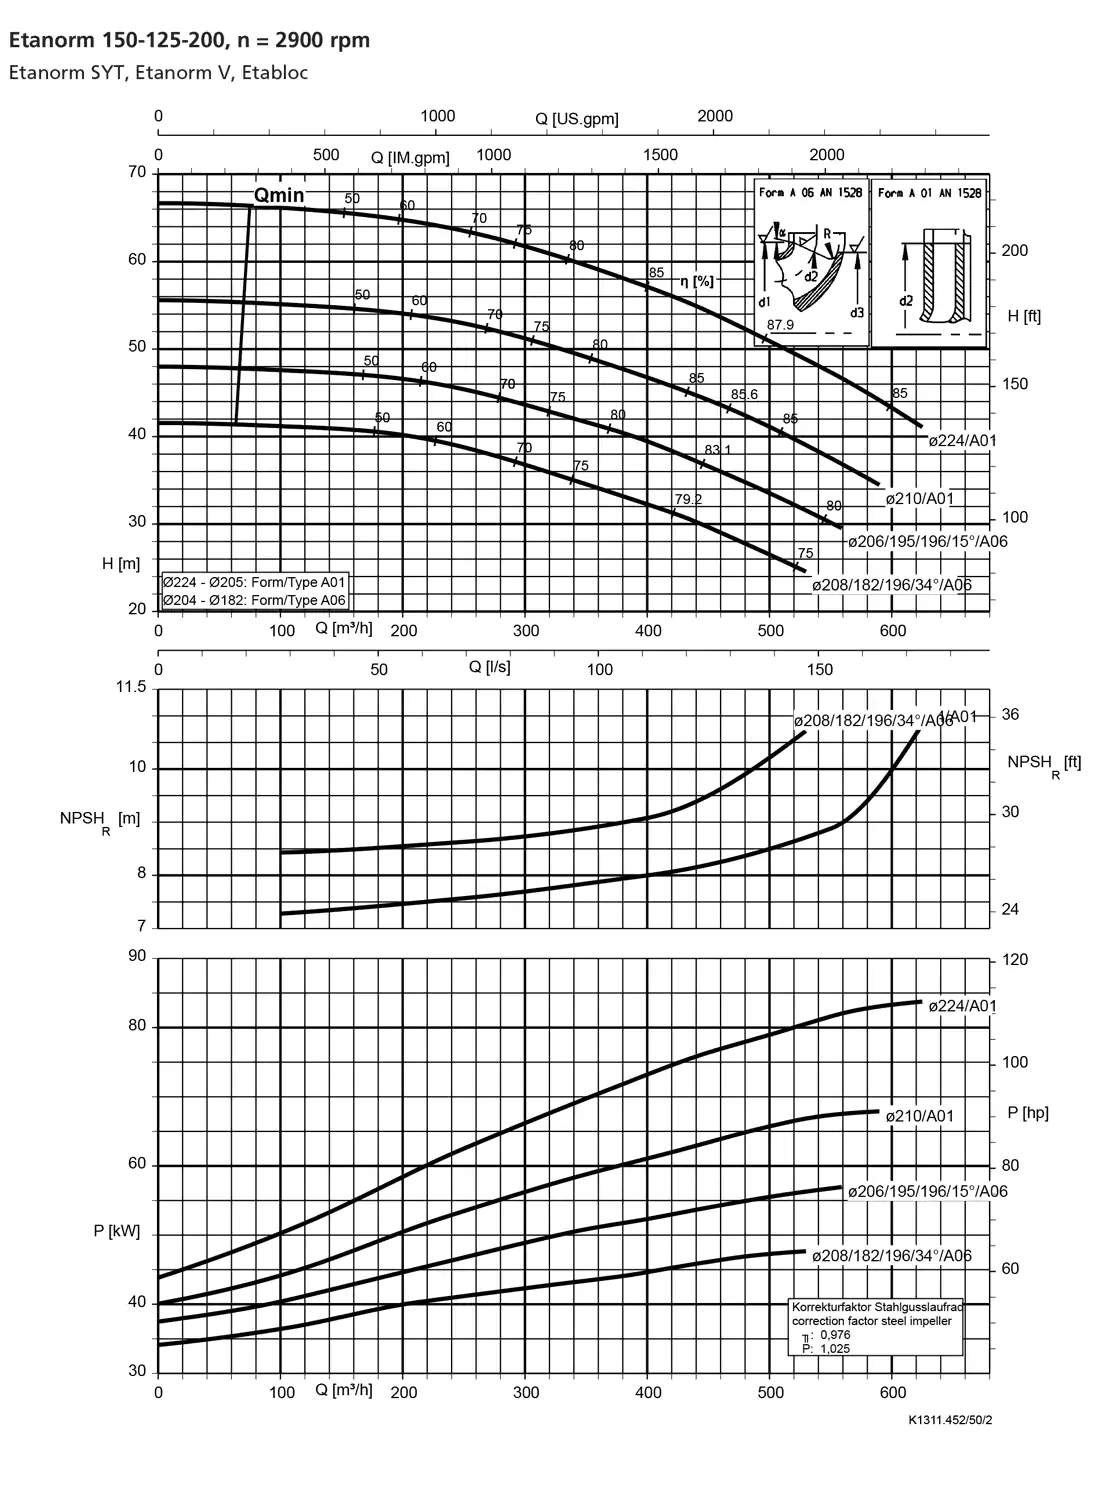 نمودار-کارکرد-پمپ-etanorm-150-125-200-2900